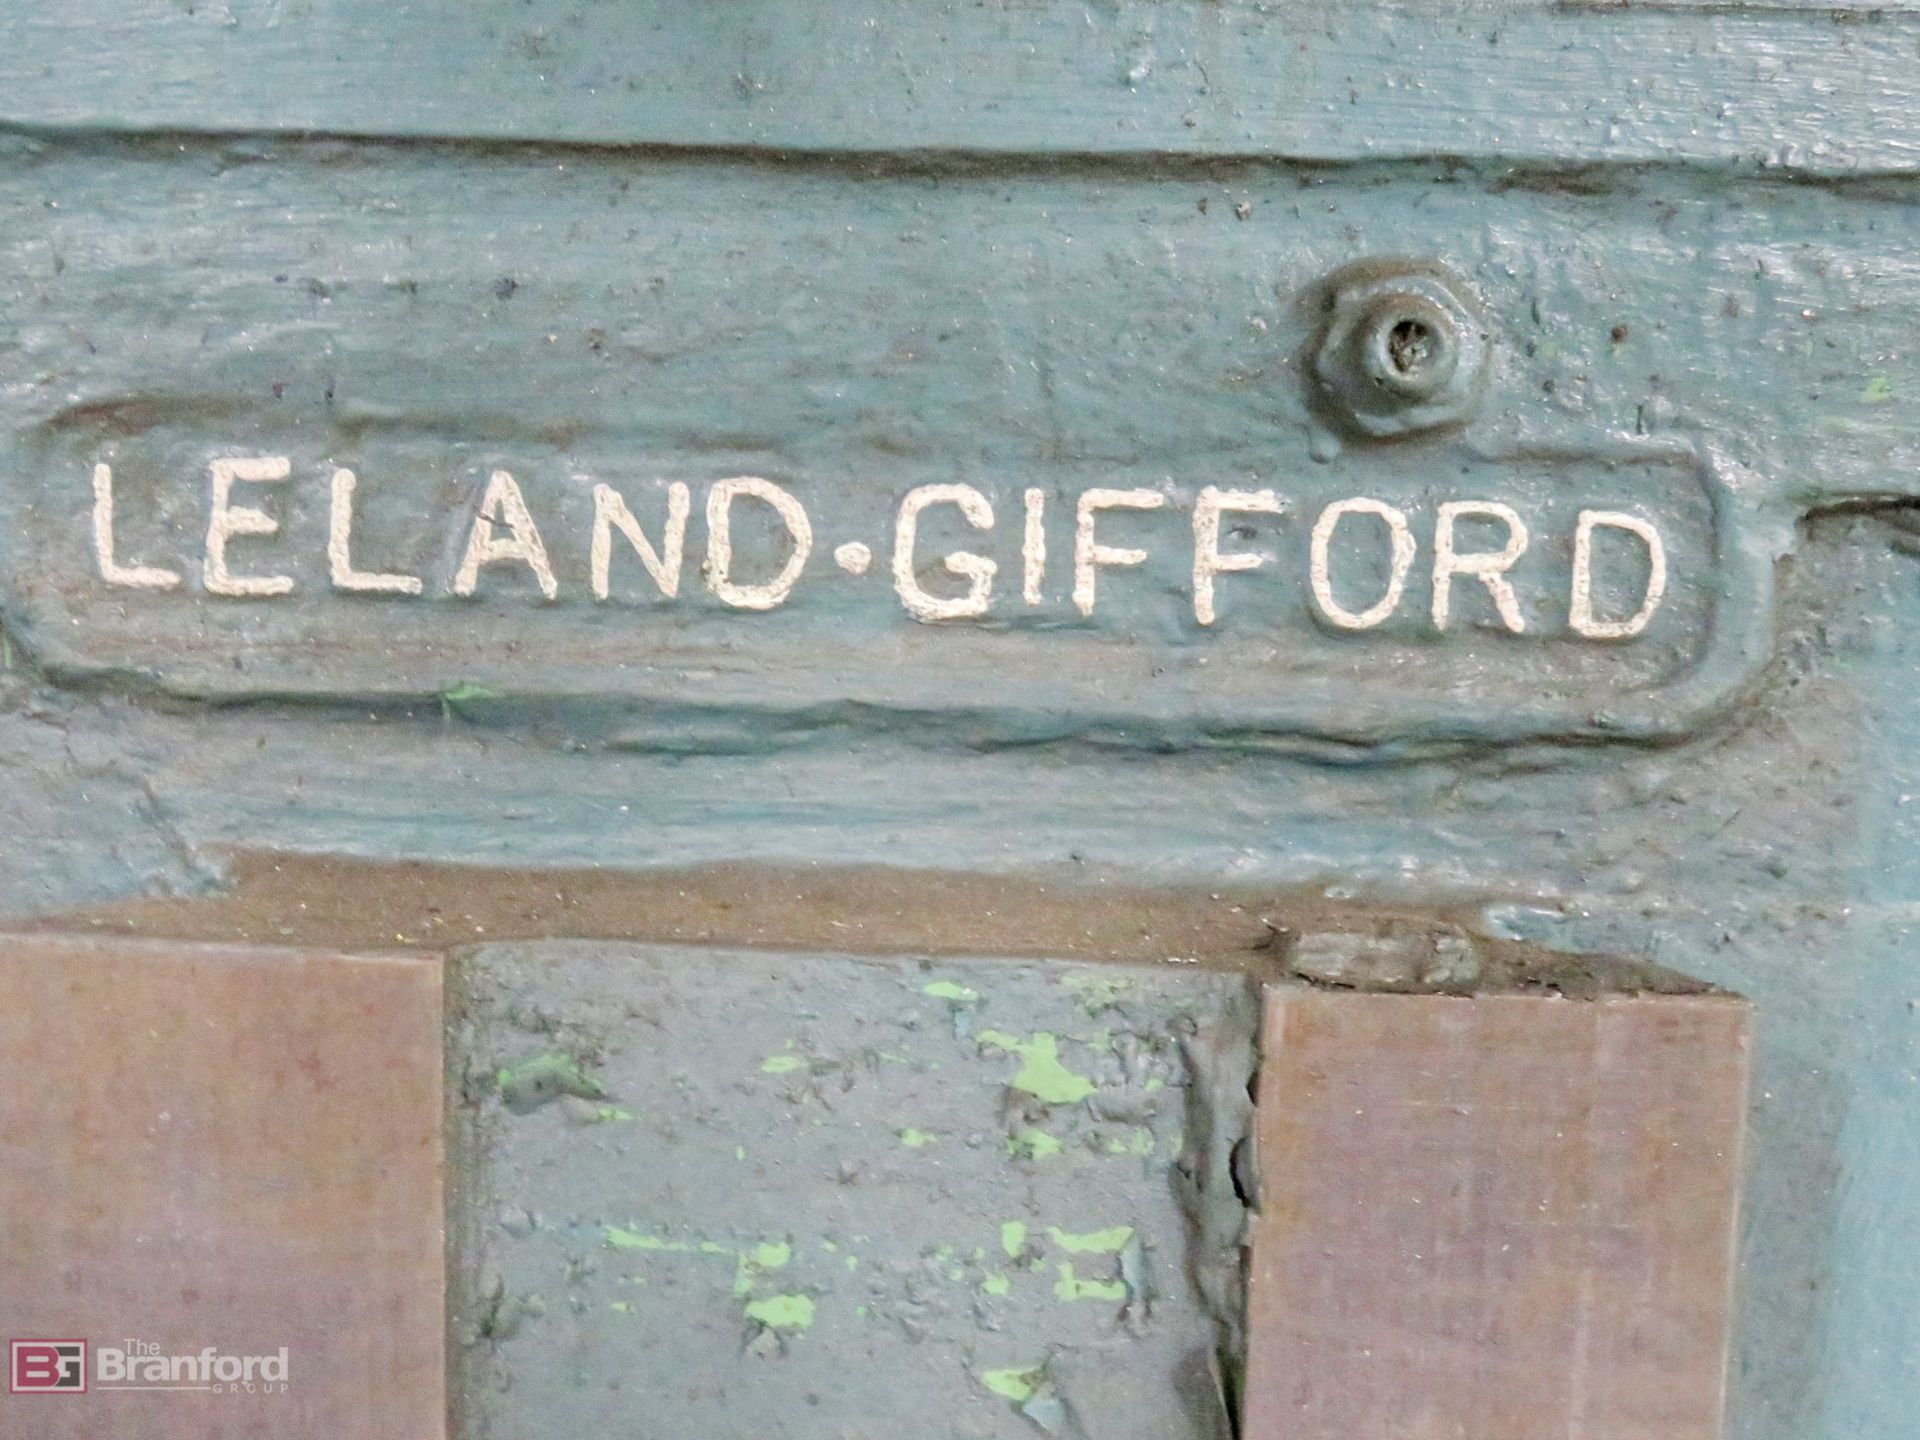 Leland-Gifford No. 2 6-head gang drill - Image 4 of 8